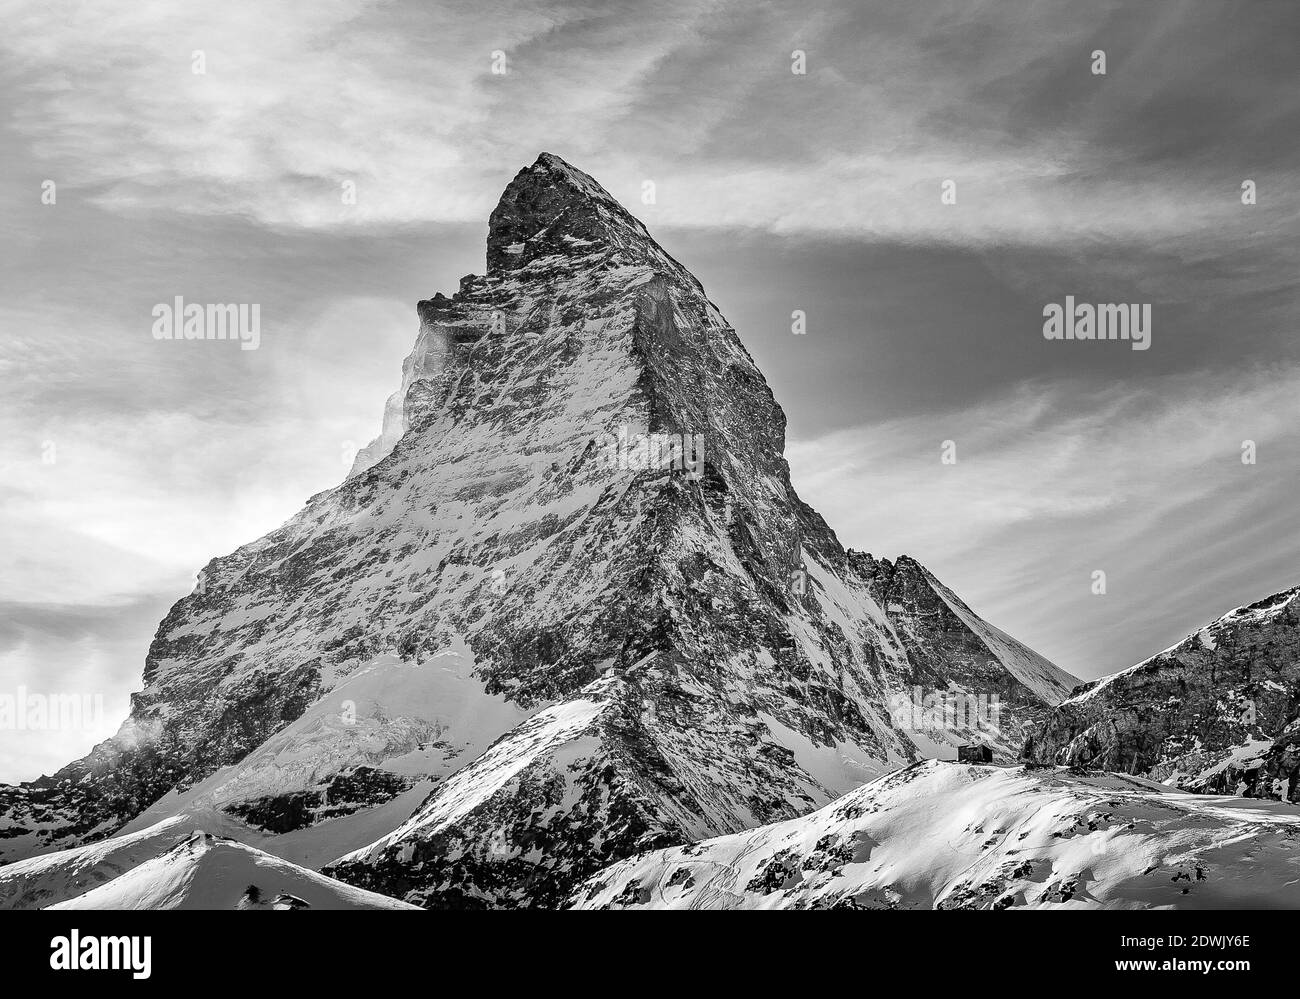 Photo noir et blanc de Matterhorn de Zermatt, Suisse Banque D'Images